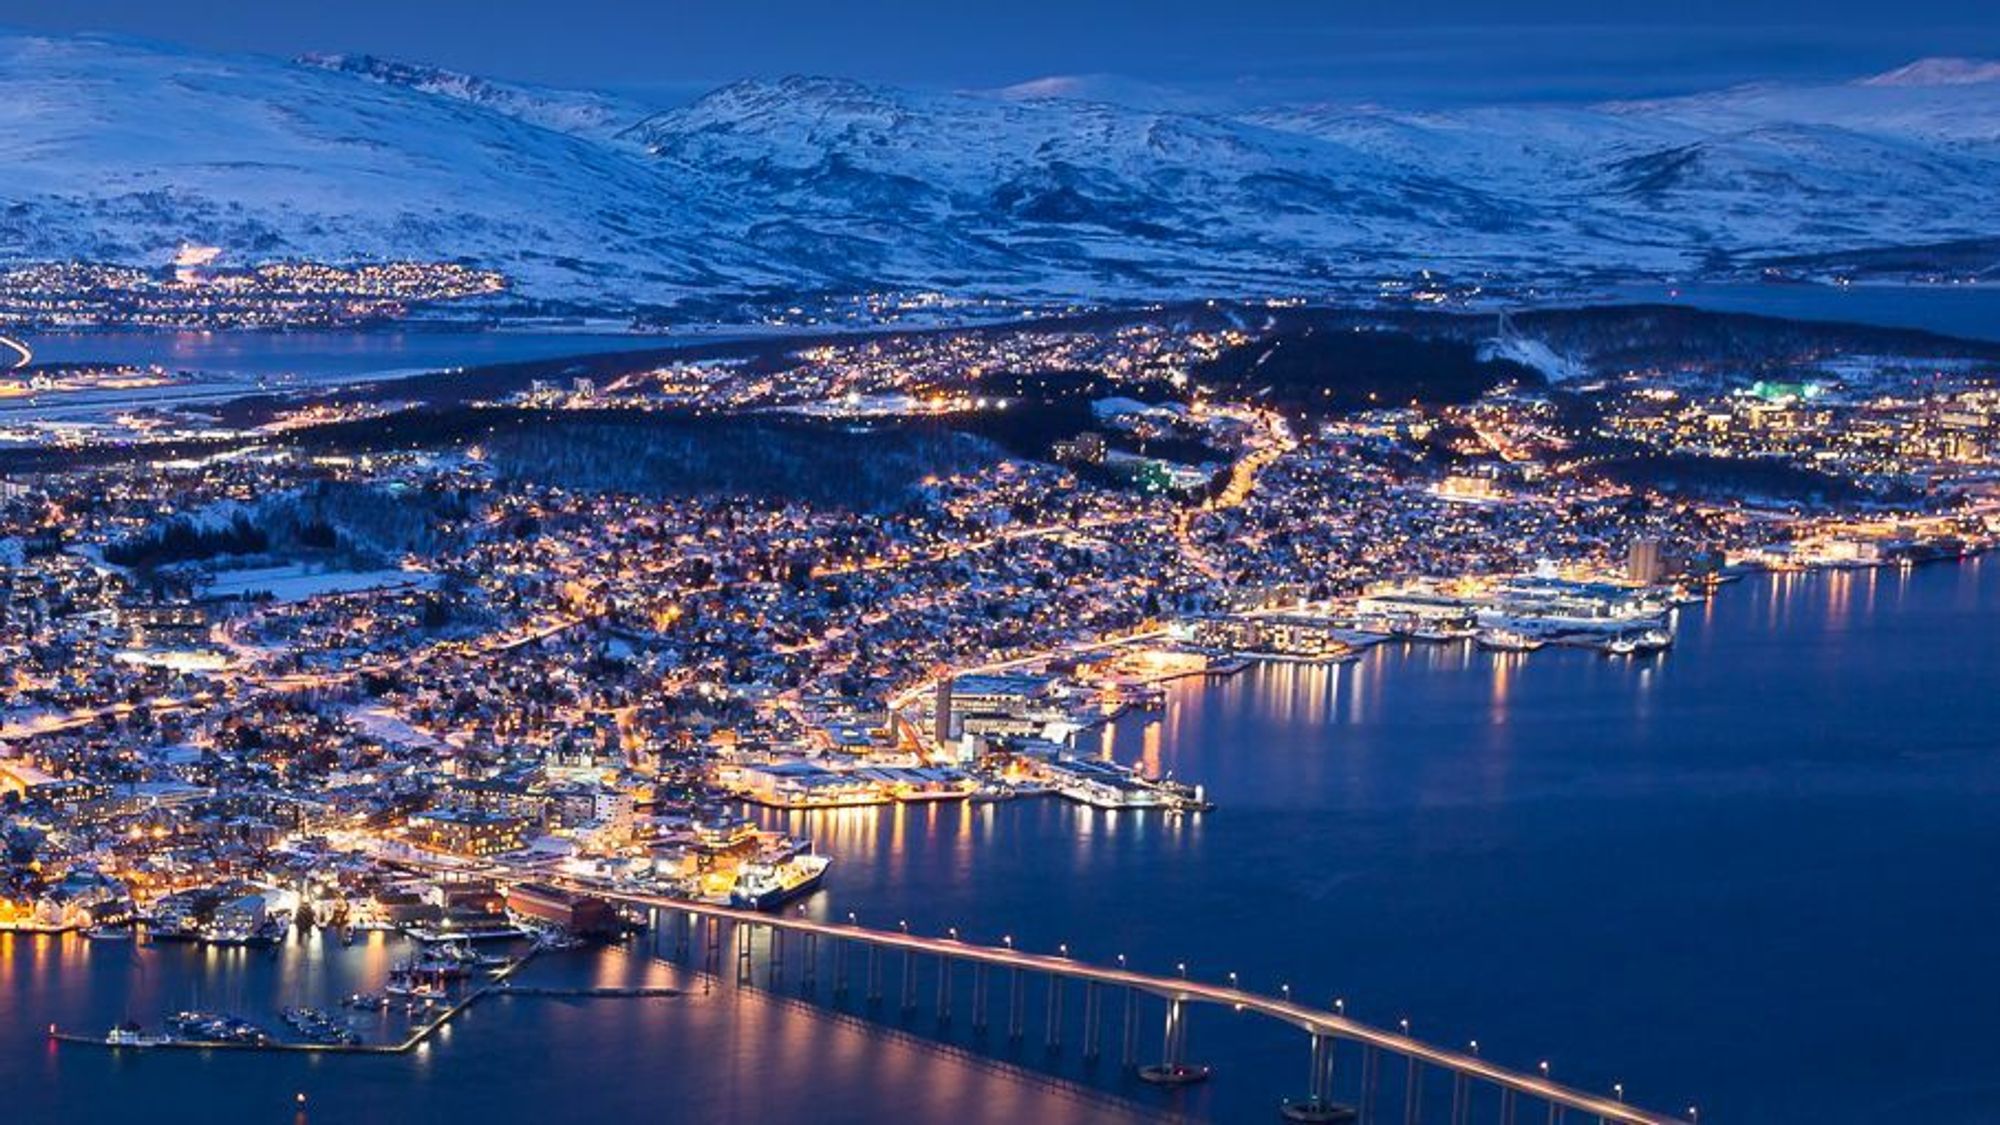 Universitetet i Tromsø ligger til høyre i bildet. Ilustrasjonsfoto.